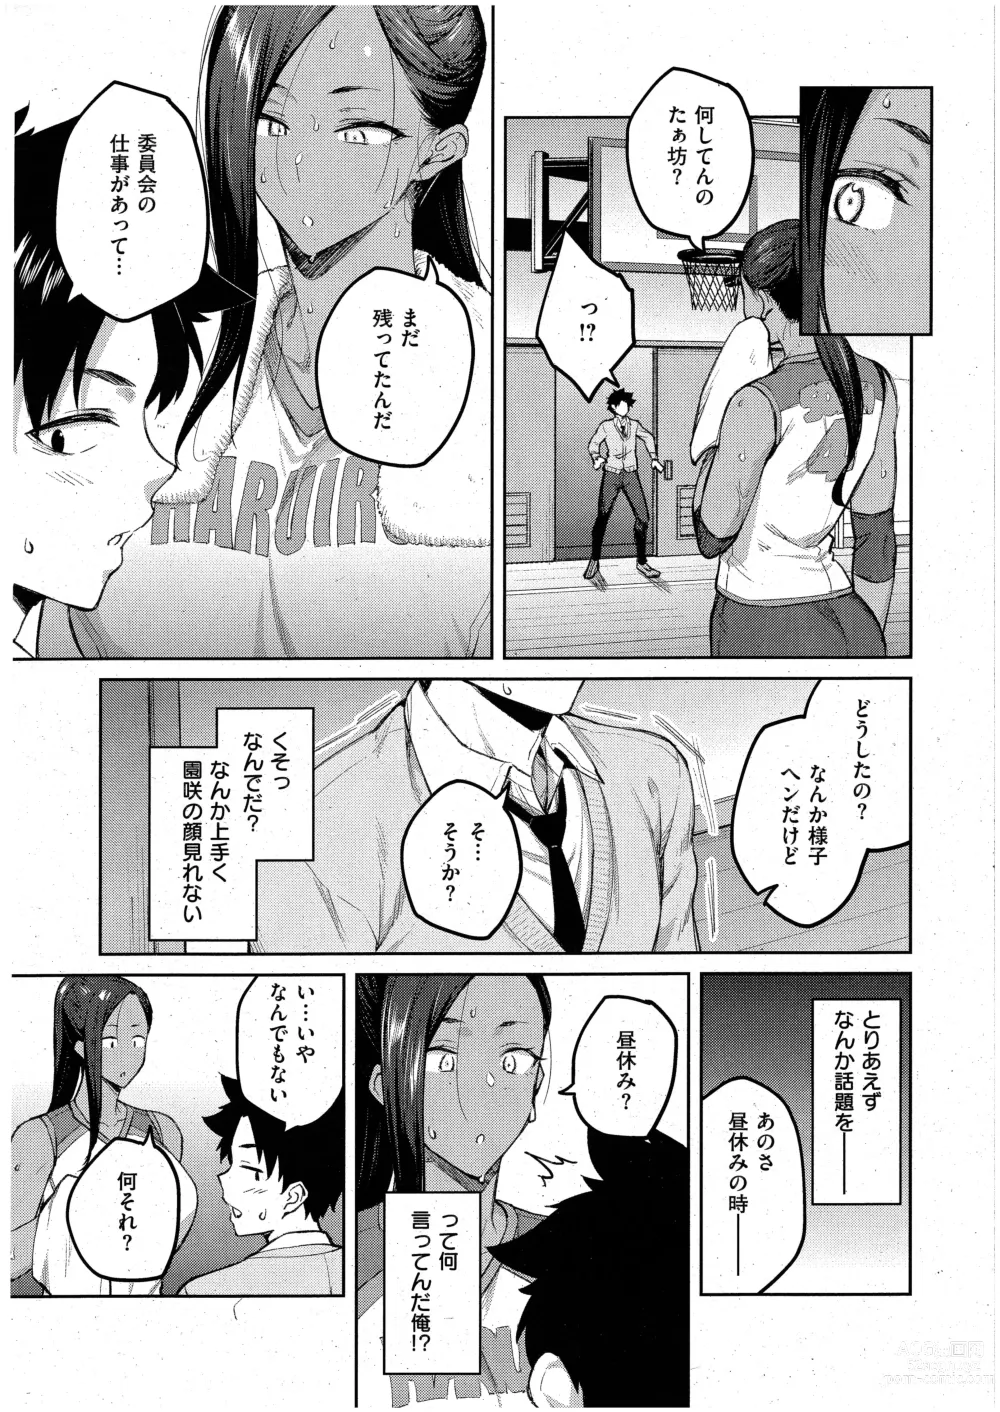 Page 9 of manga Tachiaoi